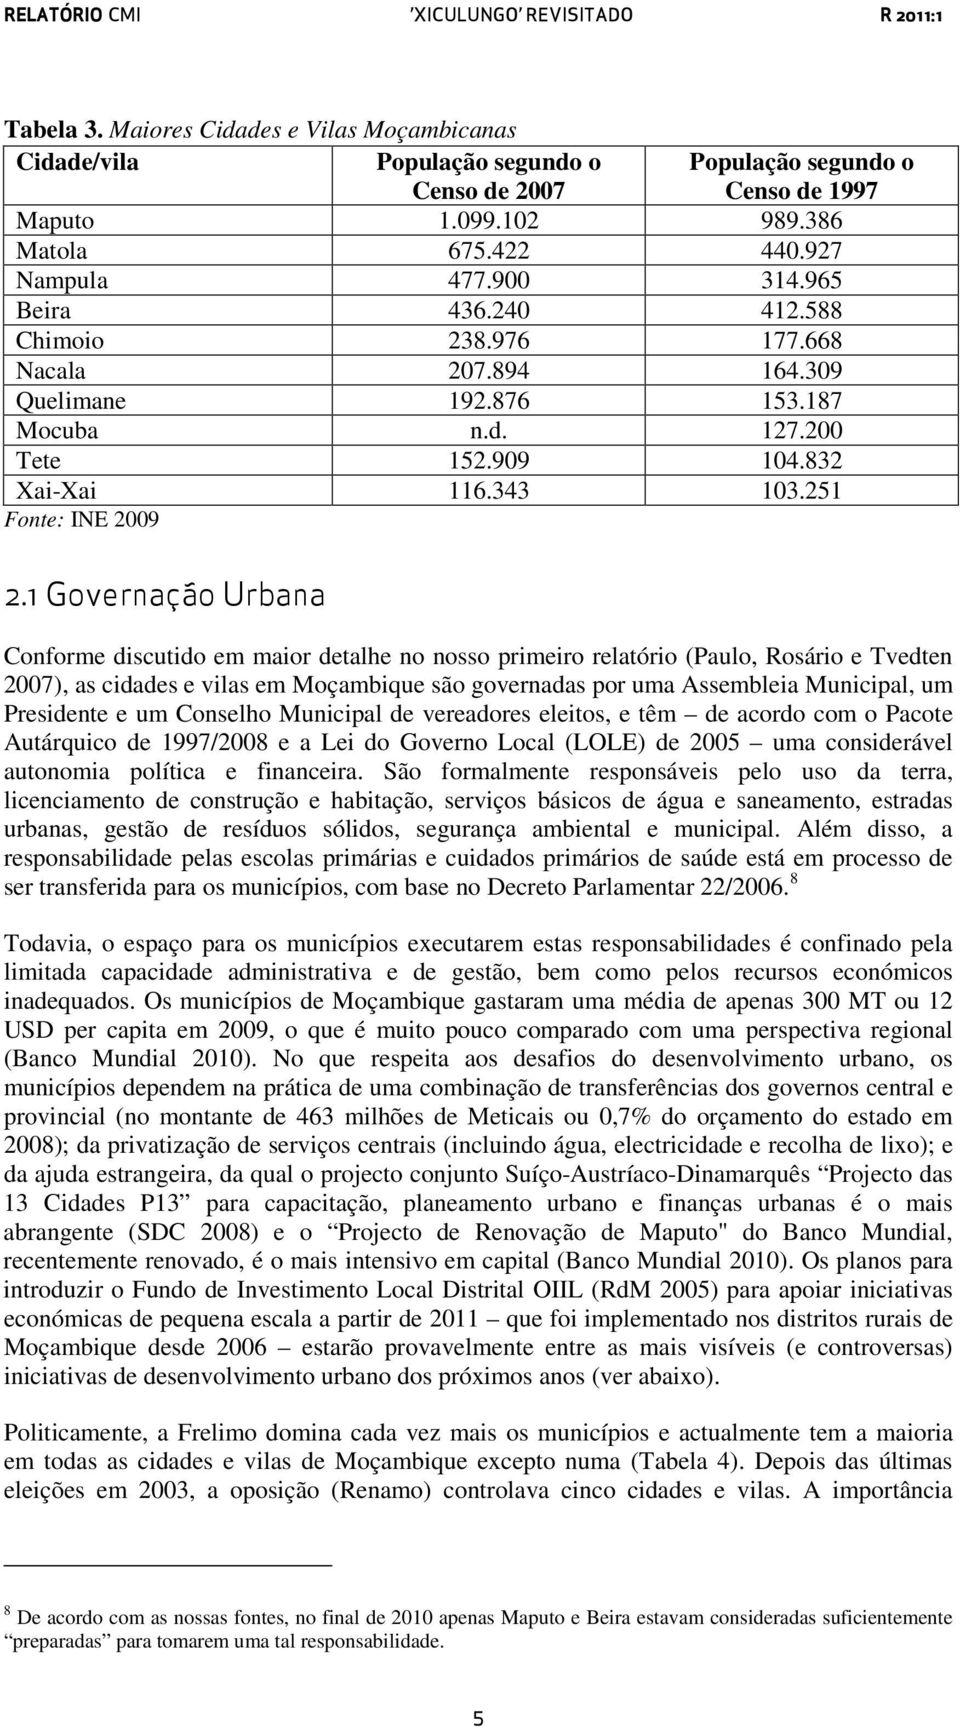 1 Governação Urbana Conforme discutido em maior detalhe no nosso primeiro relatório (Paulo, Rosário e Tvedten 2007), as cidades e vilas em Moçambique são governadas por uma Assembleia Municipal, um